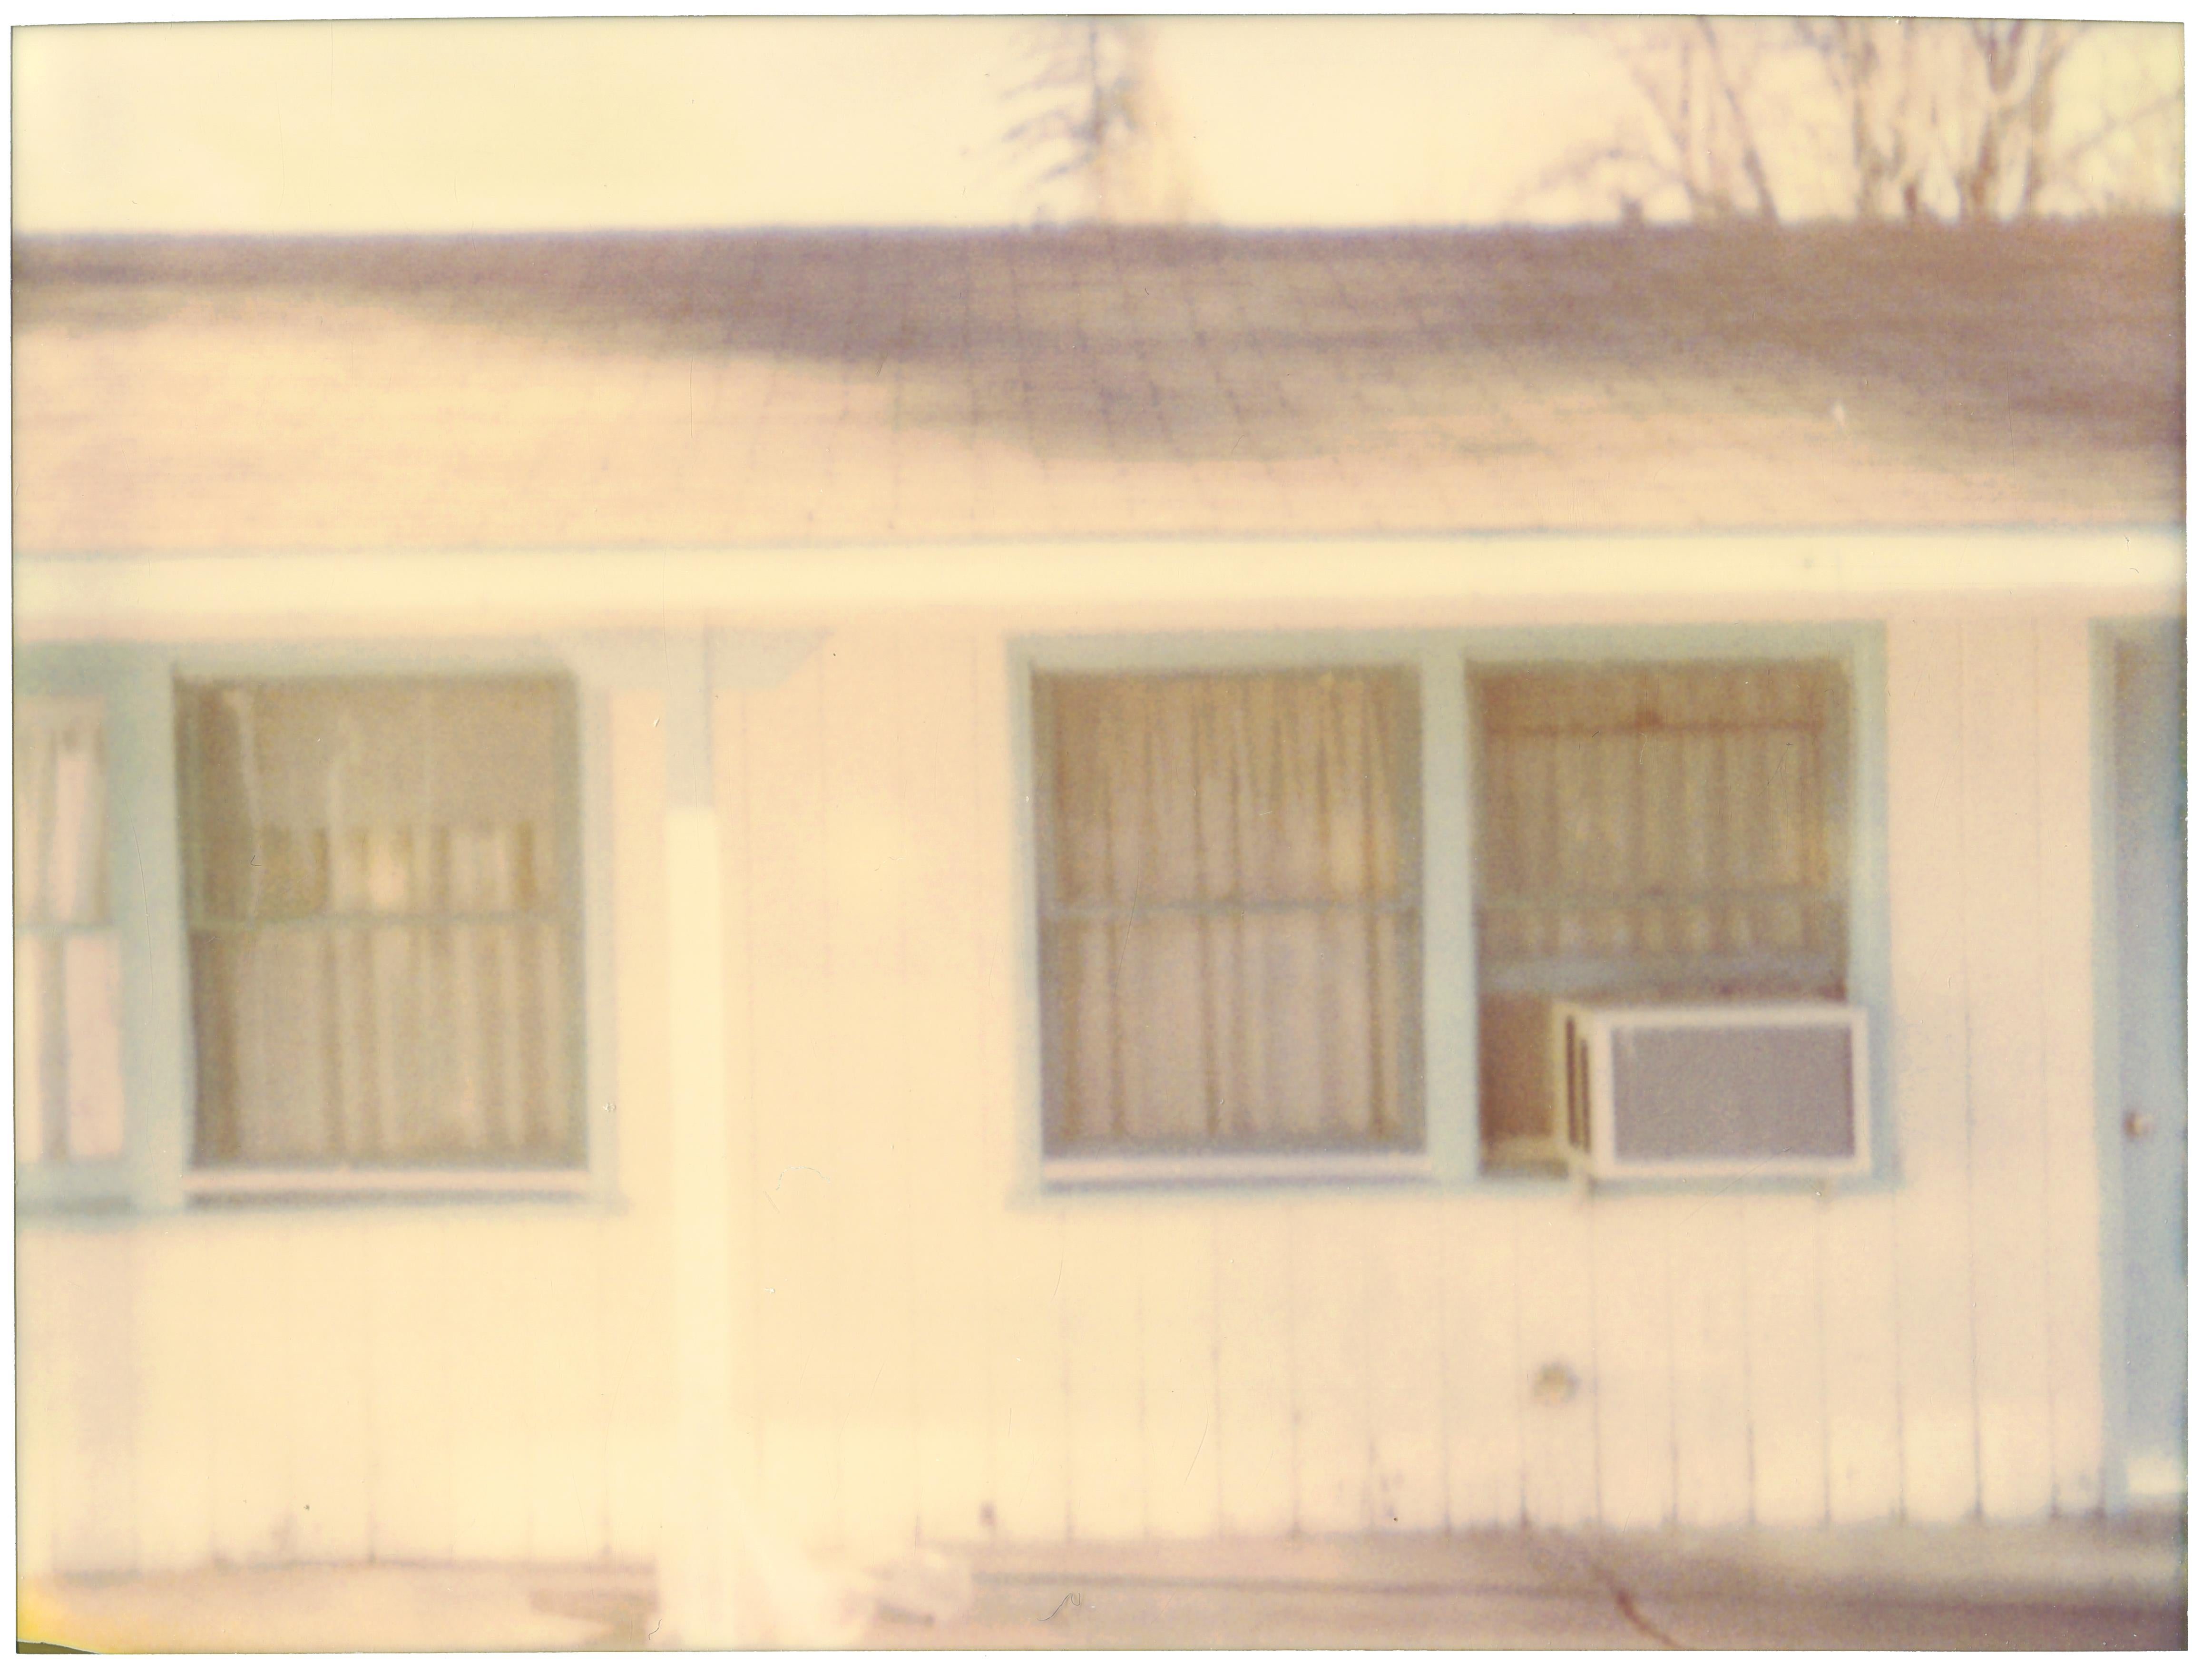 Stefanie Schneider Landscape Photograph - Lone Pine Motel I (The Last Picture Show) 20x20cm